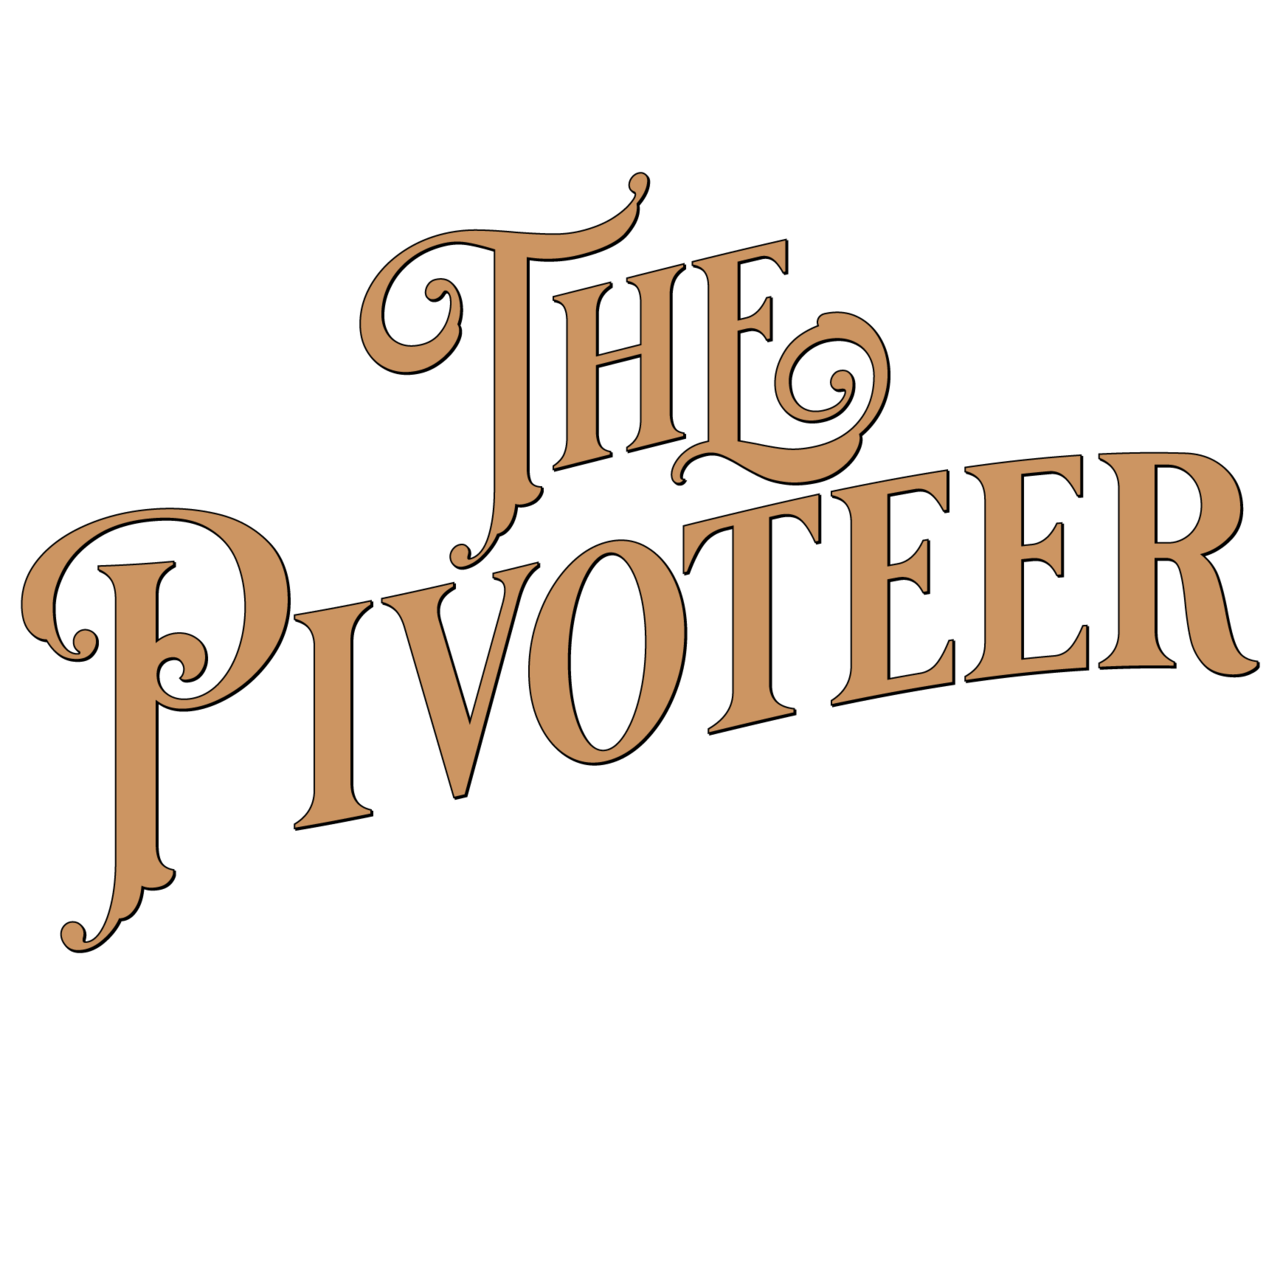 The Pivoteer